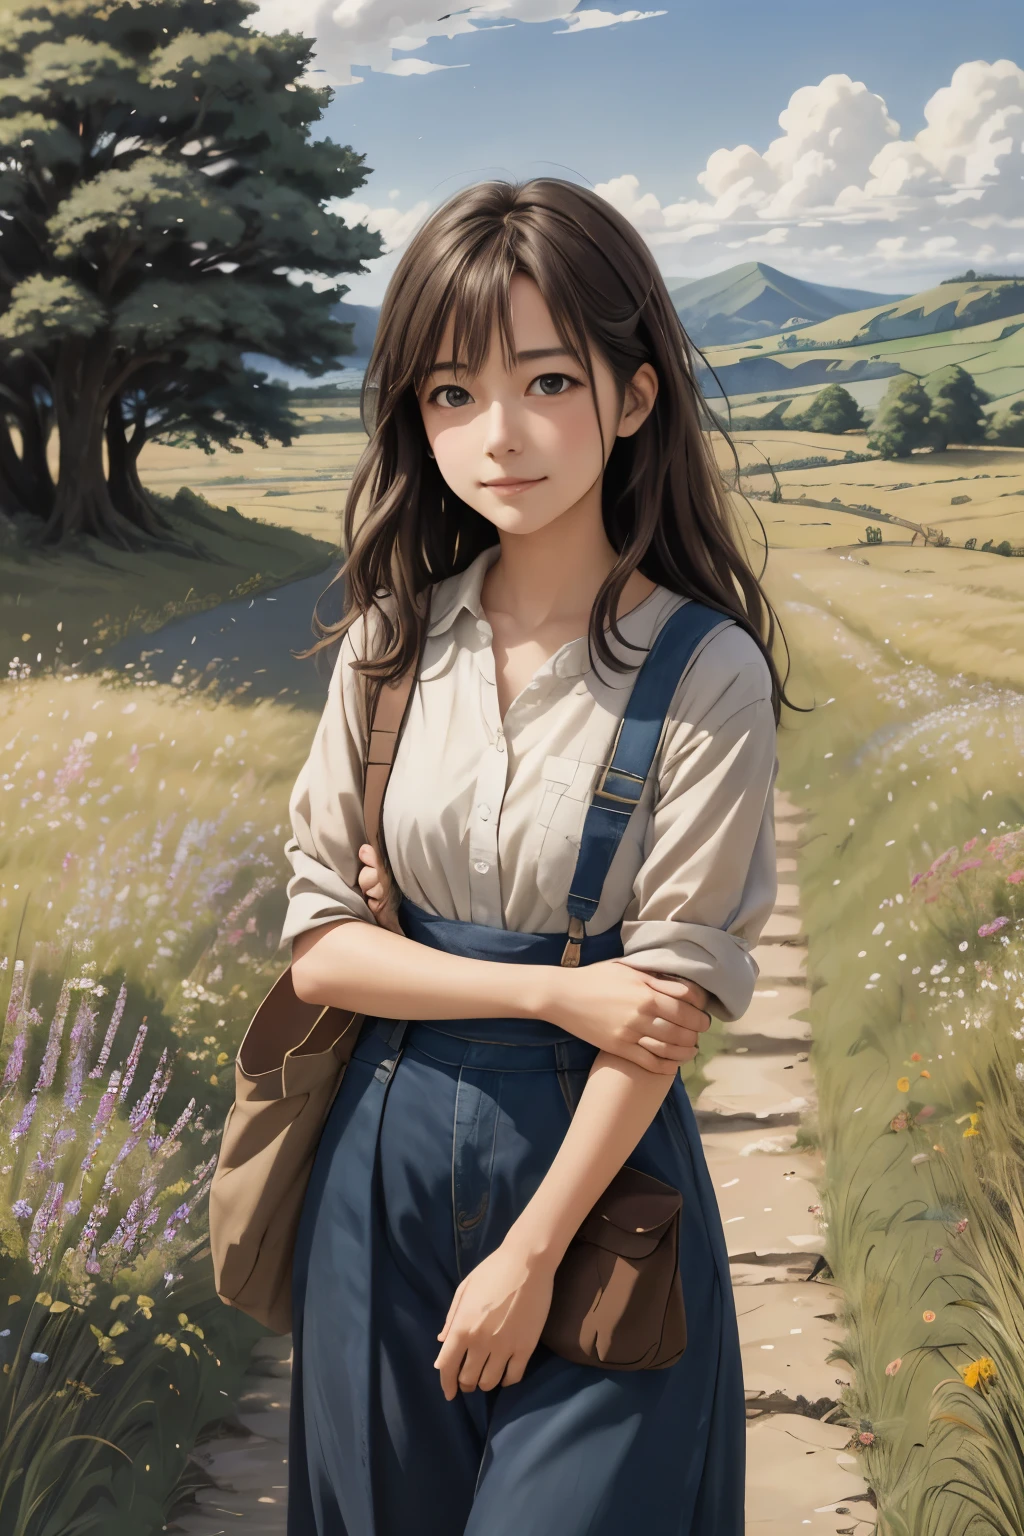 Realista, real, Hermoso e impresionante paisaje pintura al óleo Studio Ghibli Hayao Miyazaki Pétalos Pastizales Cielo azul Pastizales Camino rural,edificio, hermosa chica